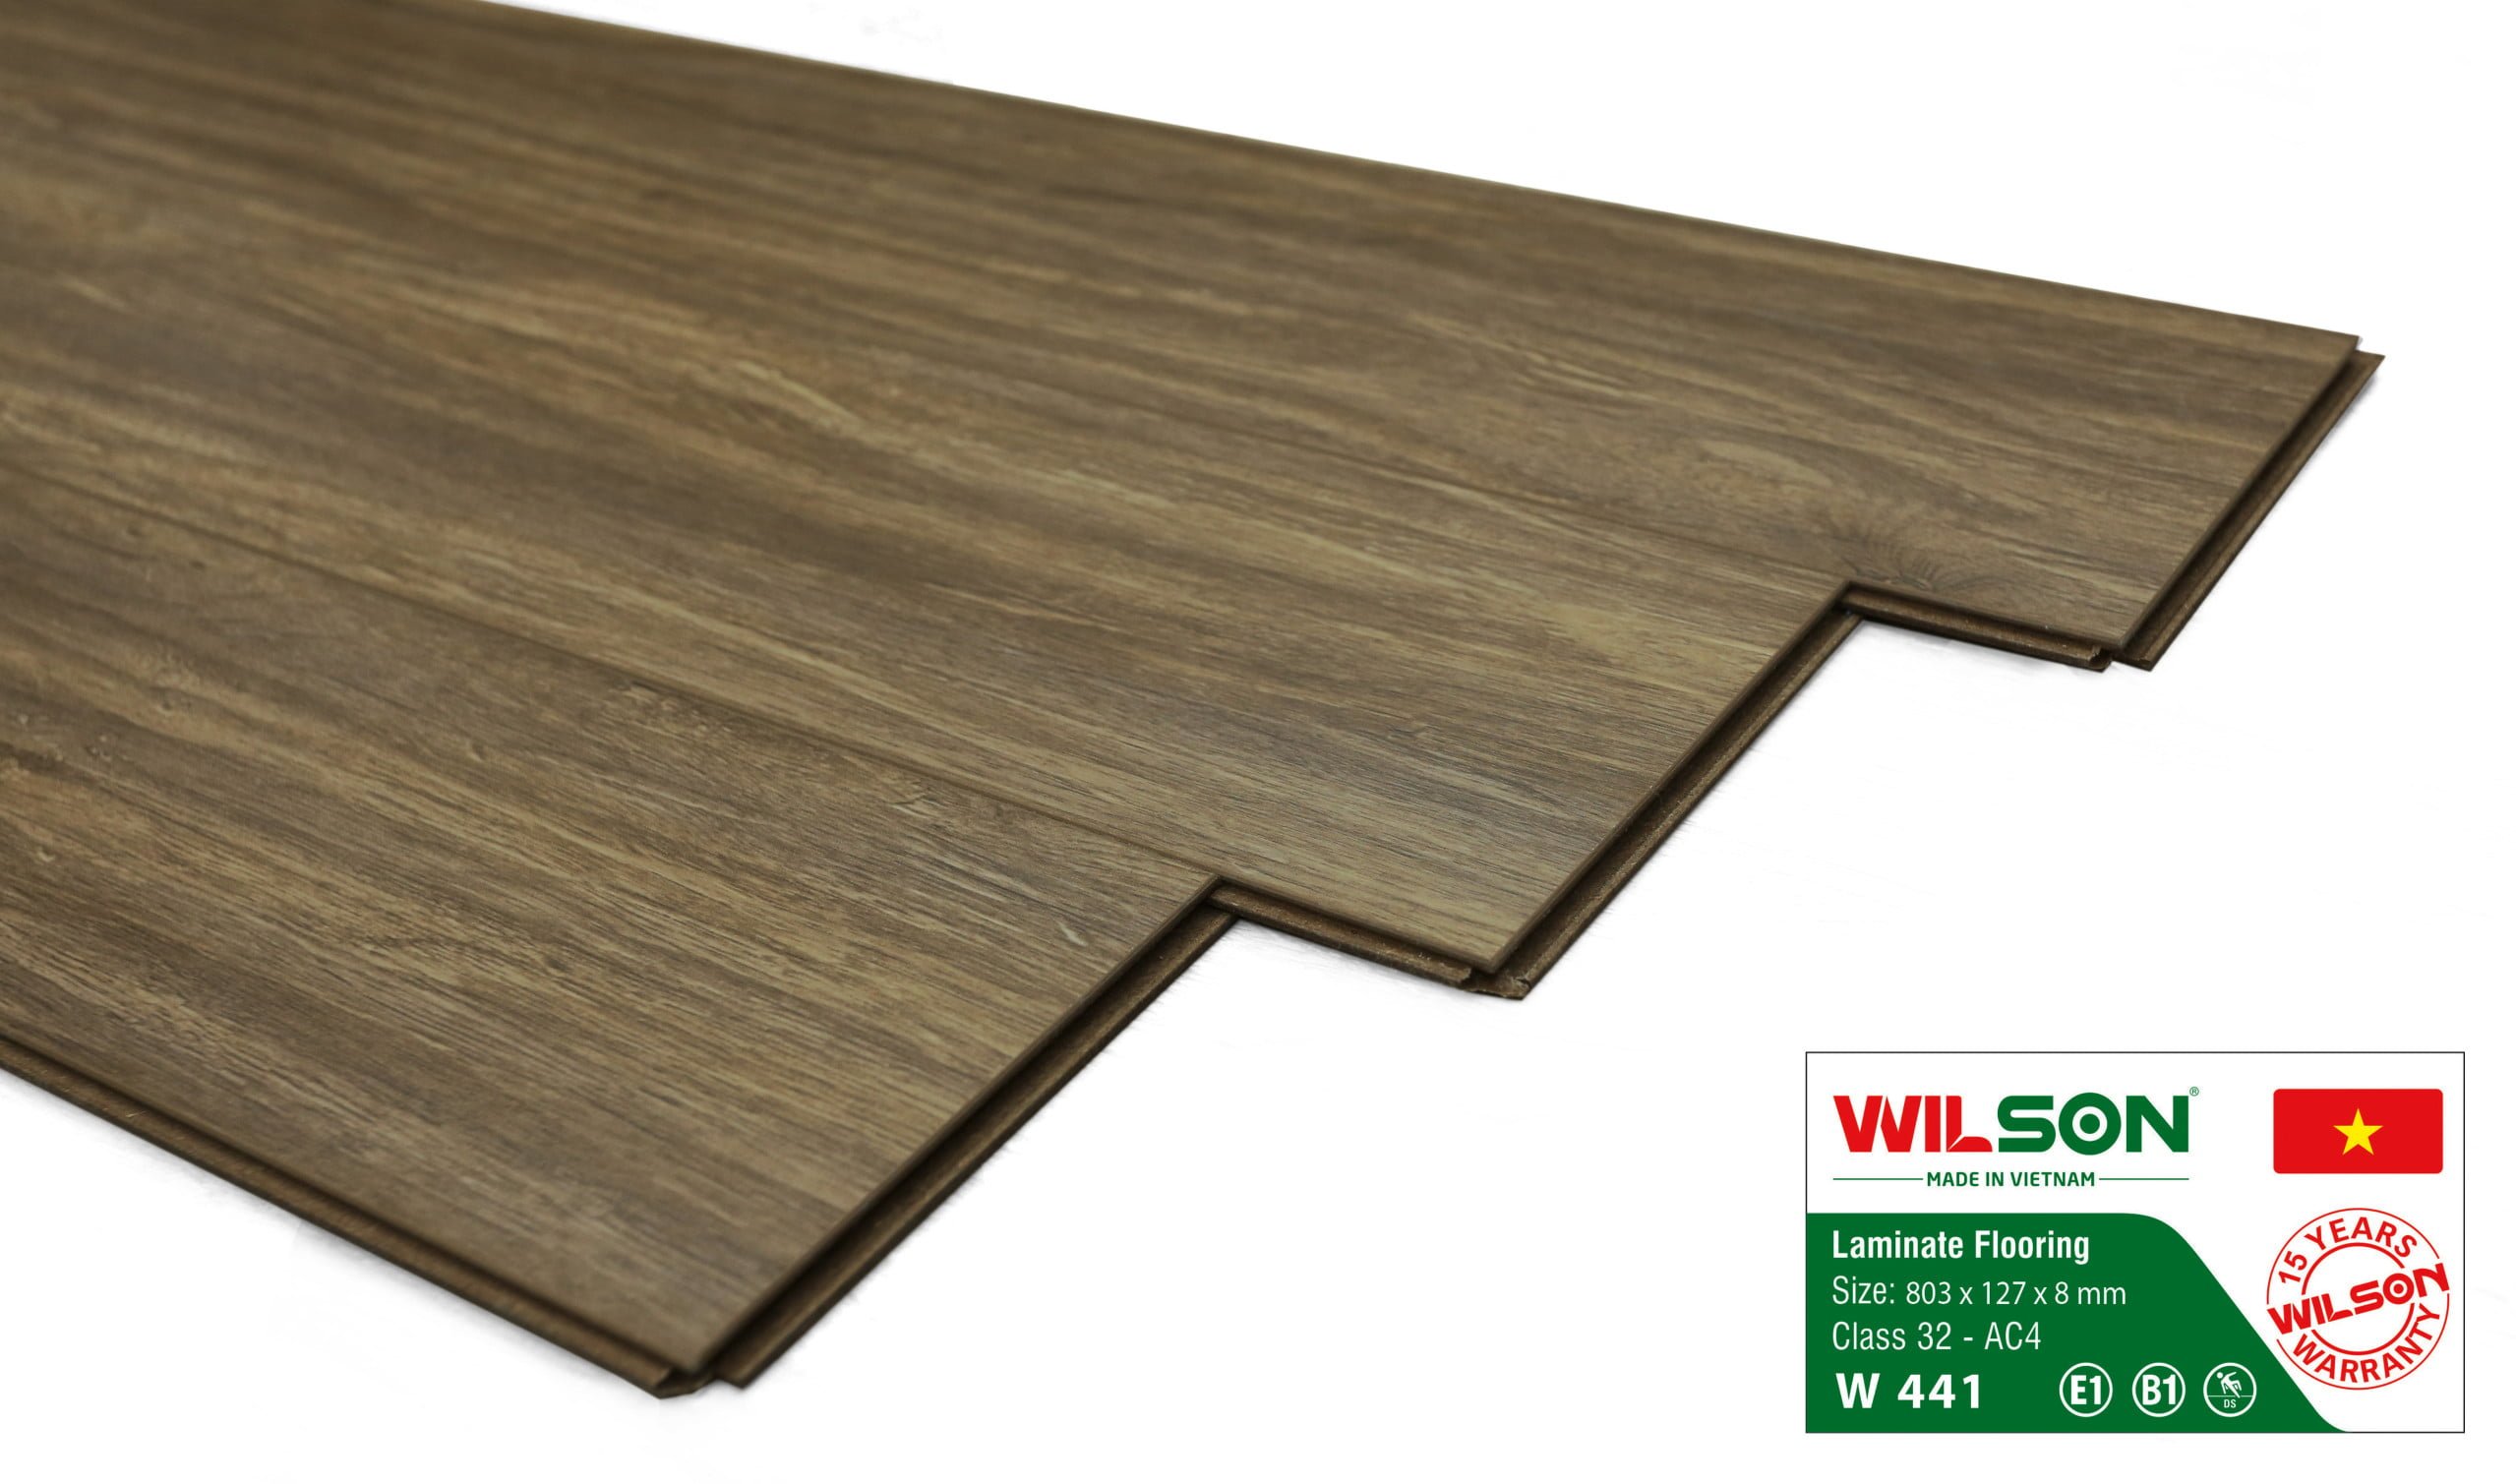 sàn gỗ wilson w441 tại tổng kho sàn gỗ an pha